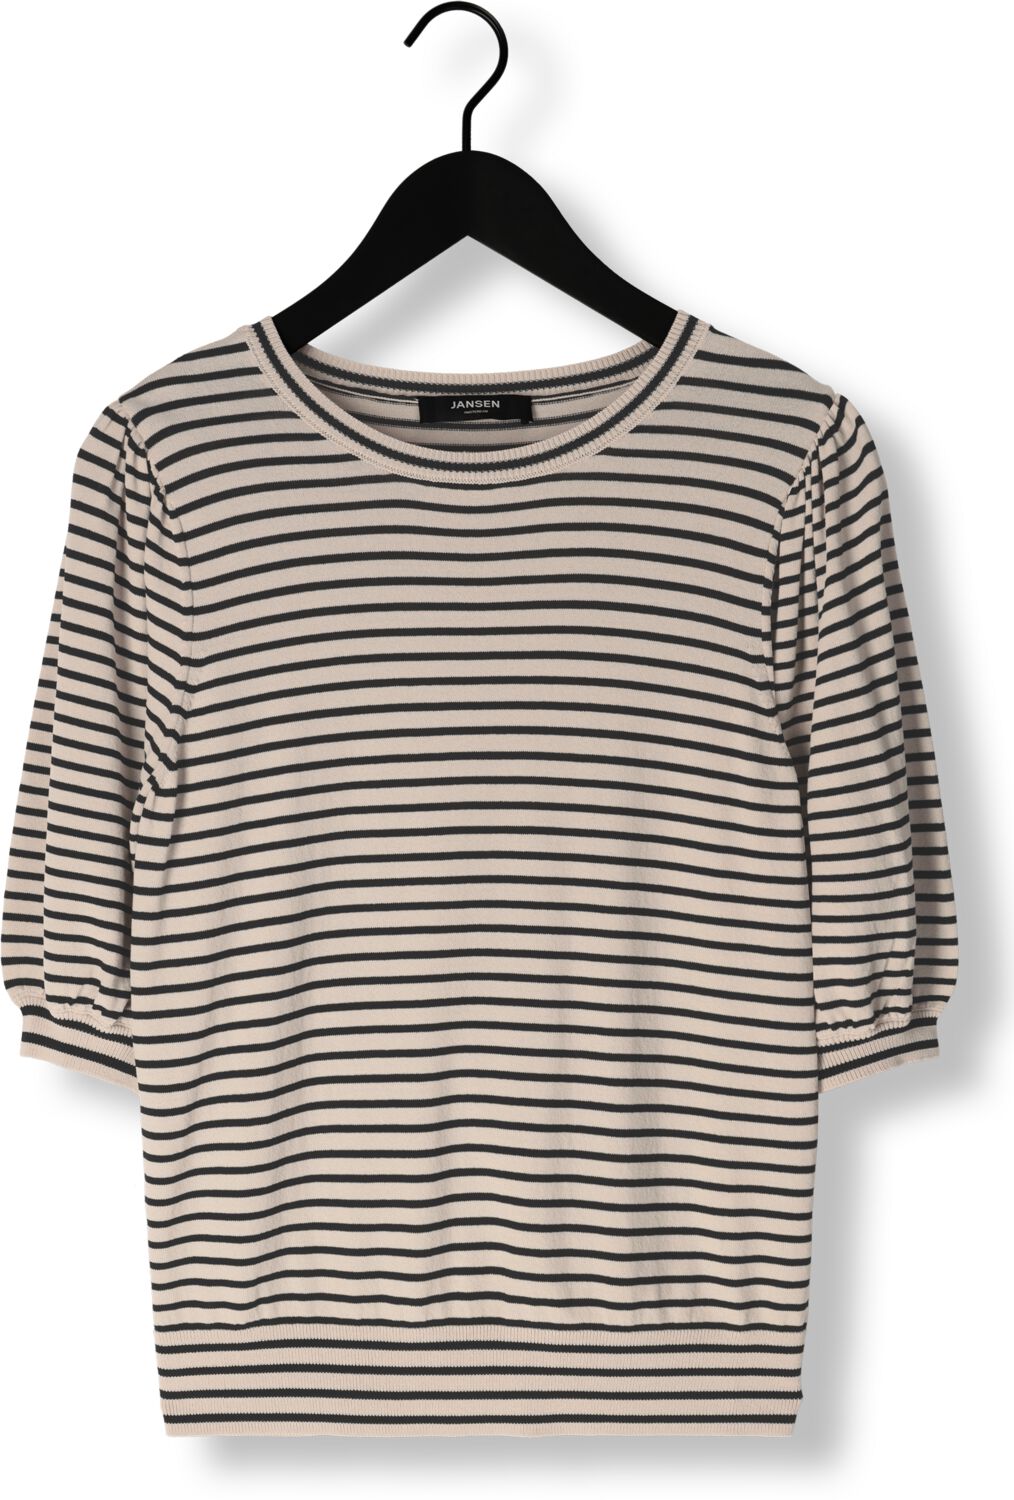 JANSEN AMSTERDAM Dames Tops & T-shirts K136 Knit Top 3 4 Sleeve Zwart